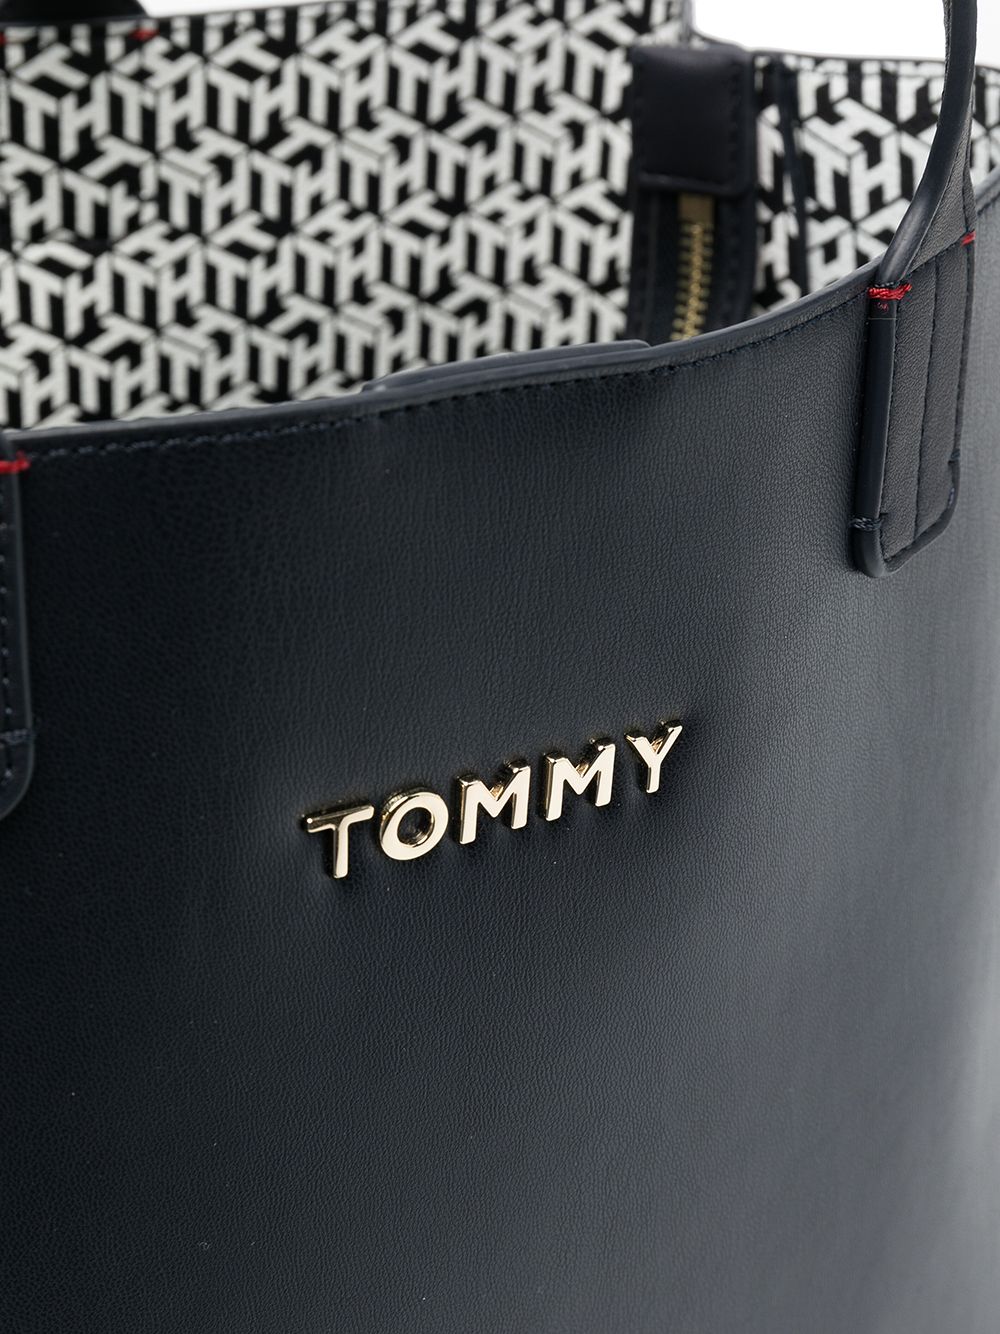 фото Tommy hilfiger сумка-тоут с металлическим логотипом